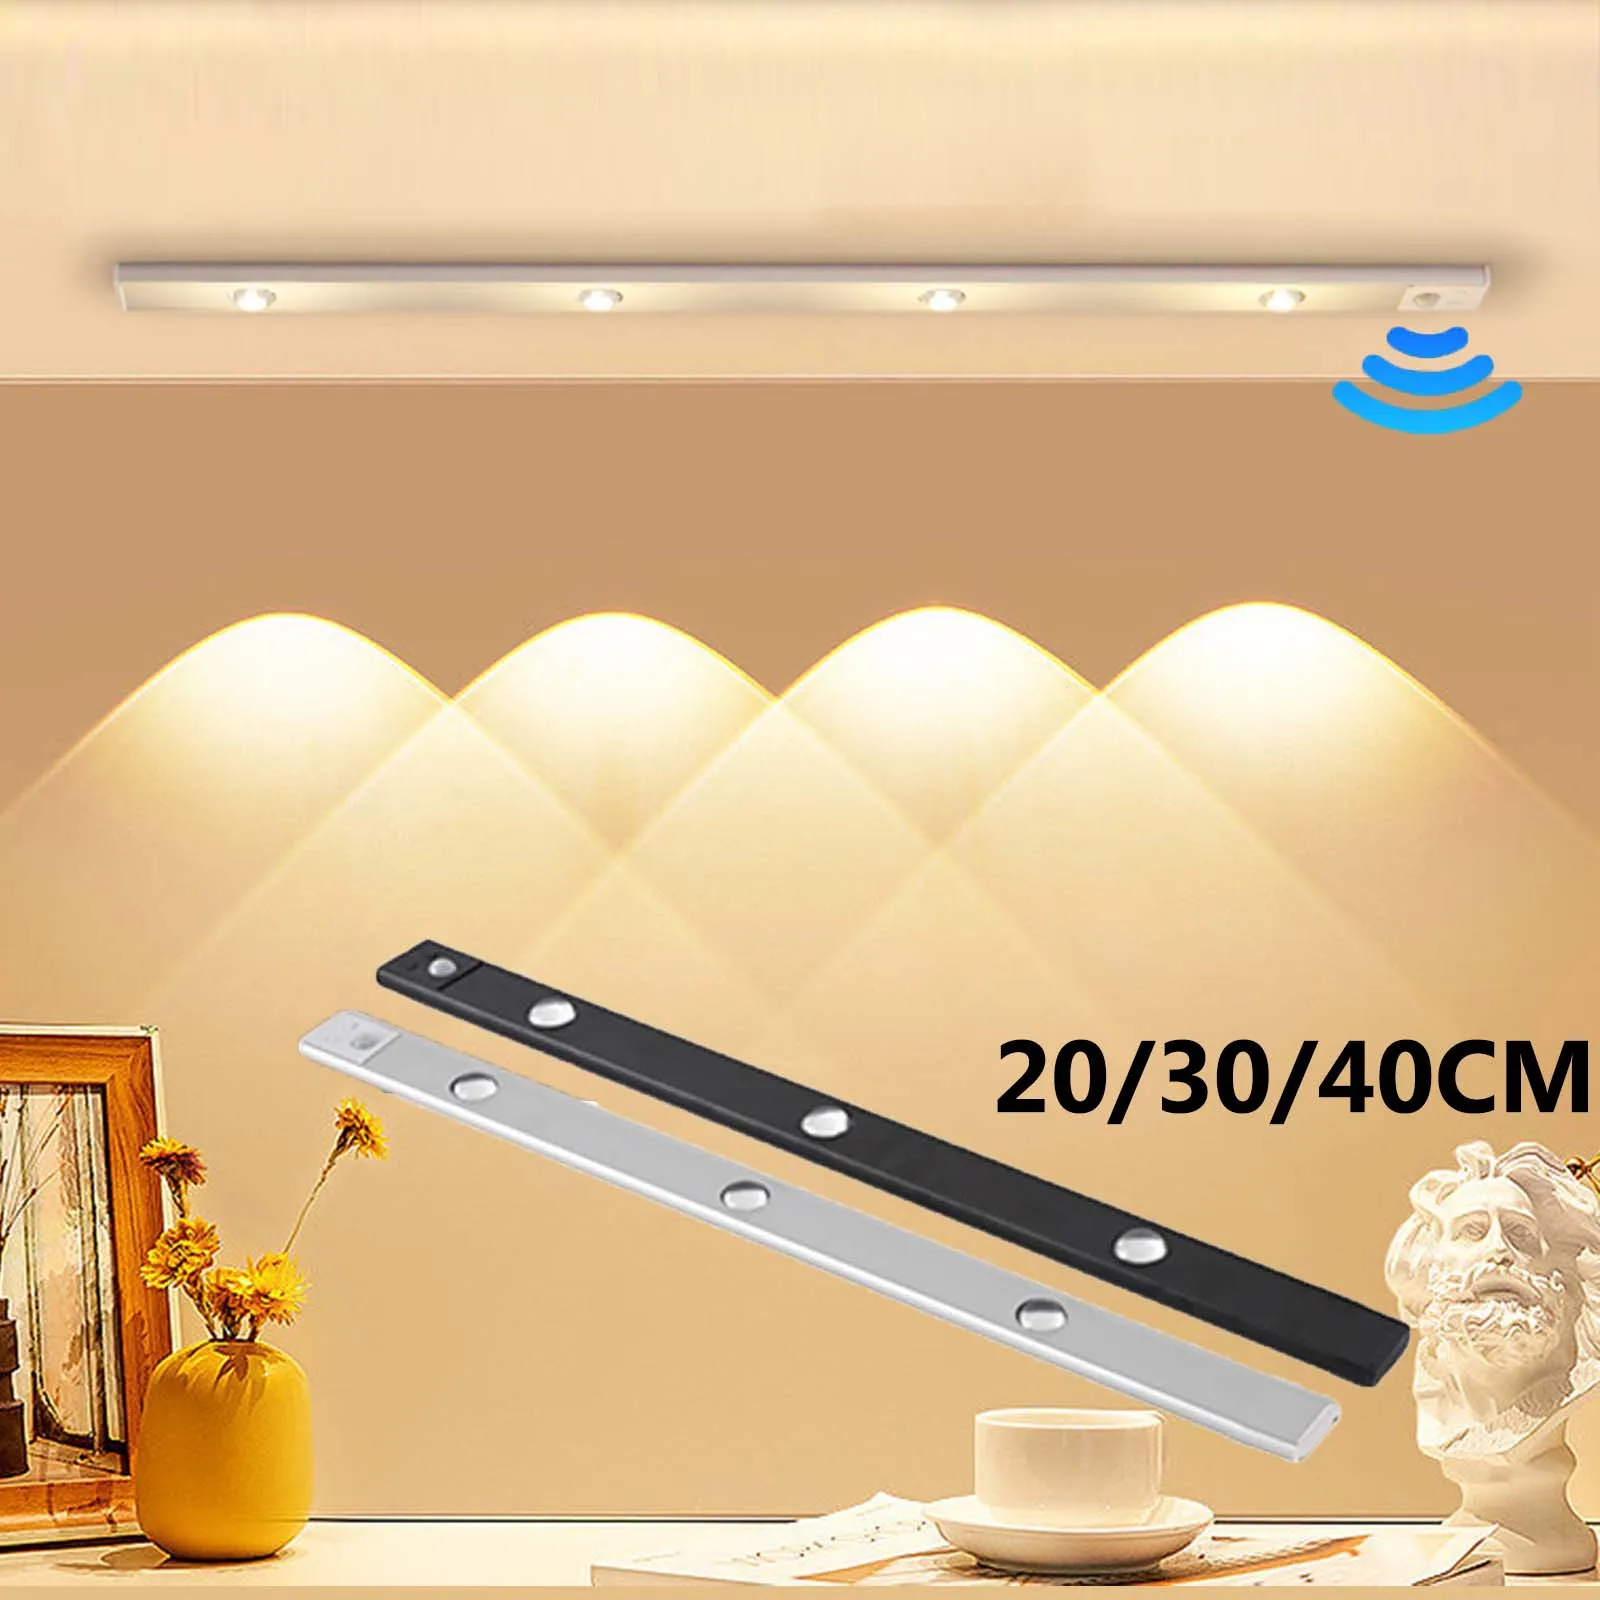 Ультратонкий светодиодный светильник для шкафа с датчиком движения PIR, 20/30/40 см, беспроводной USB-перезаряжаемый ночник, светильник для кухонного шкафа в гардеробе